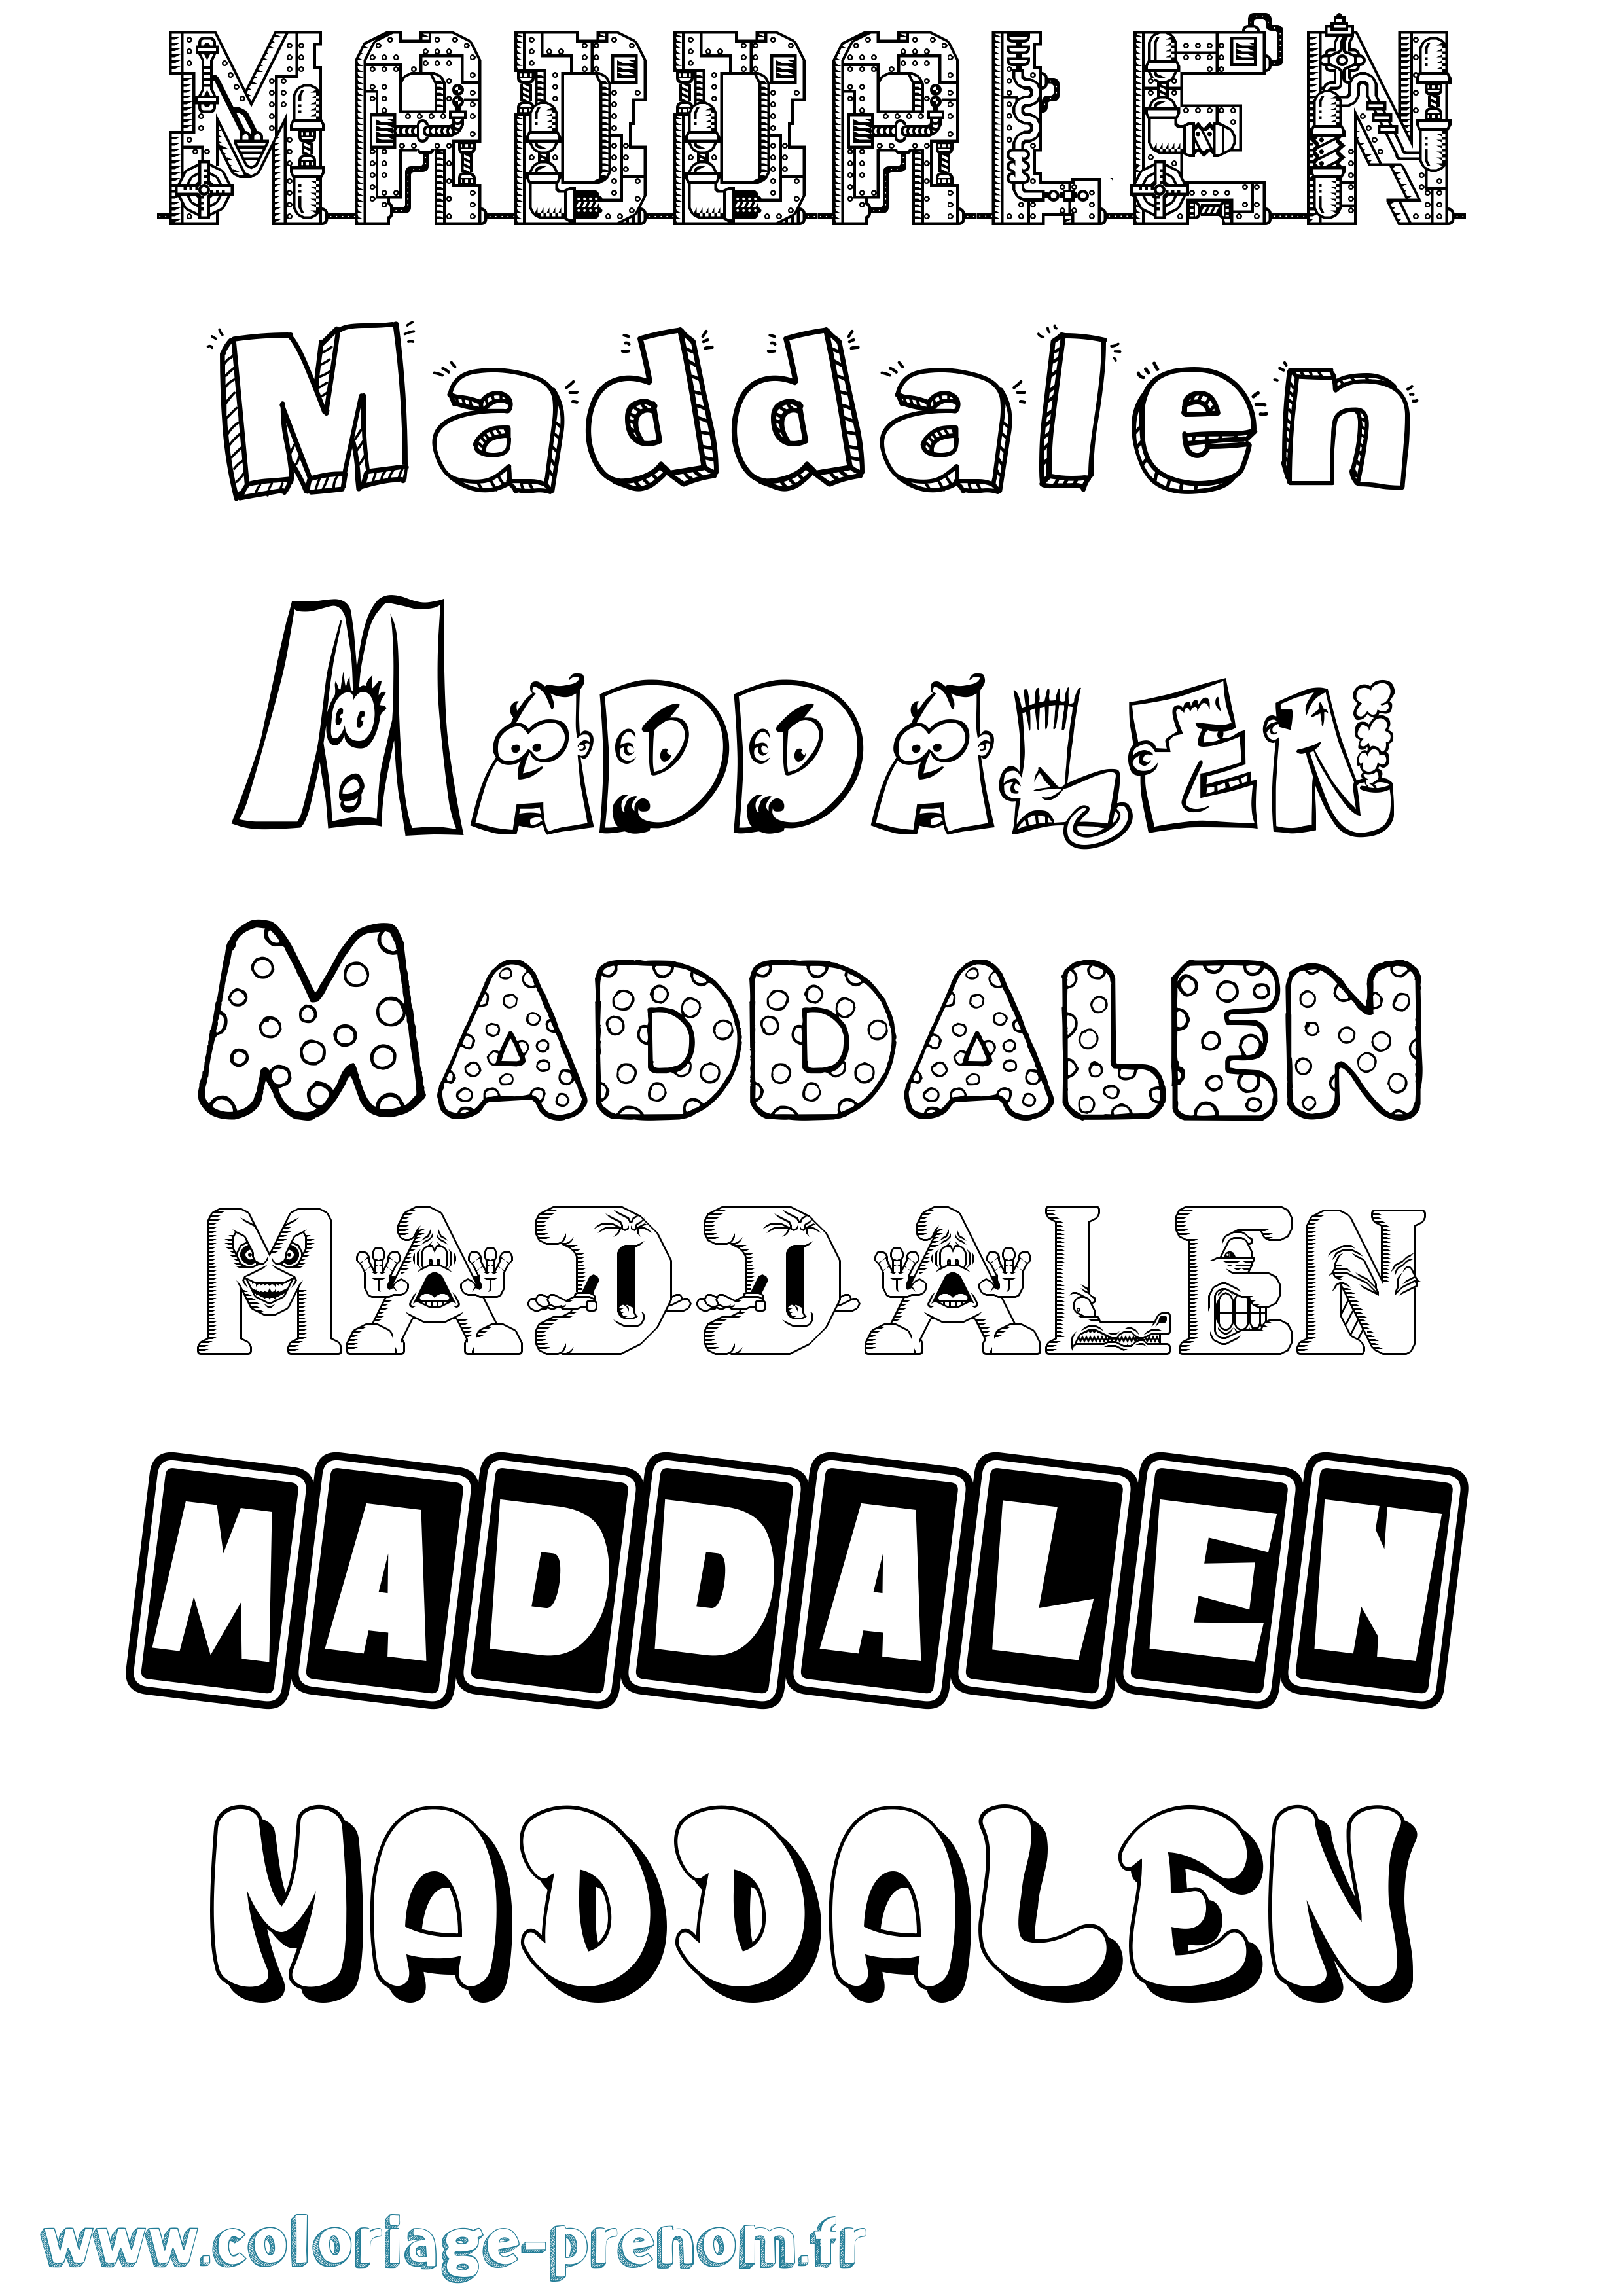 Coloriage prénom Maddalen Fun